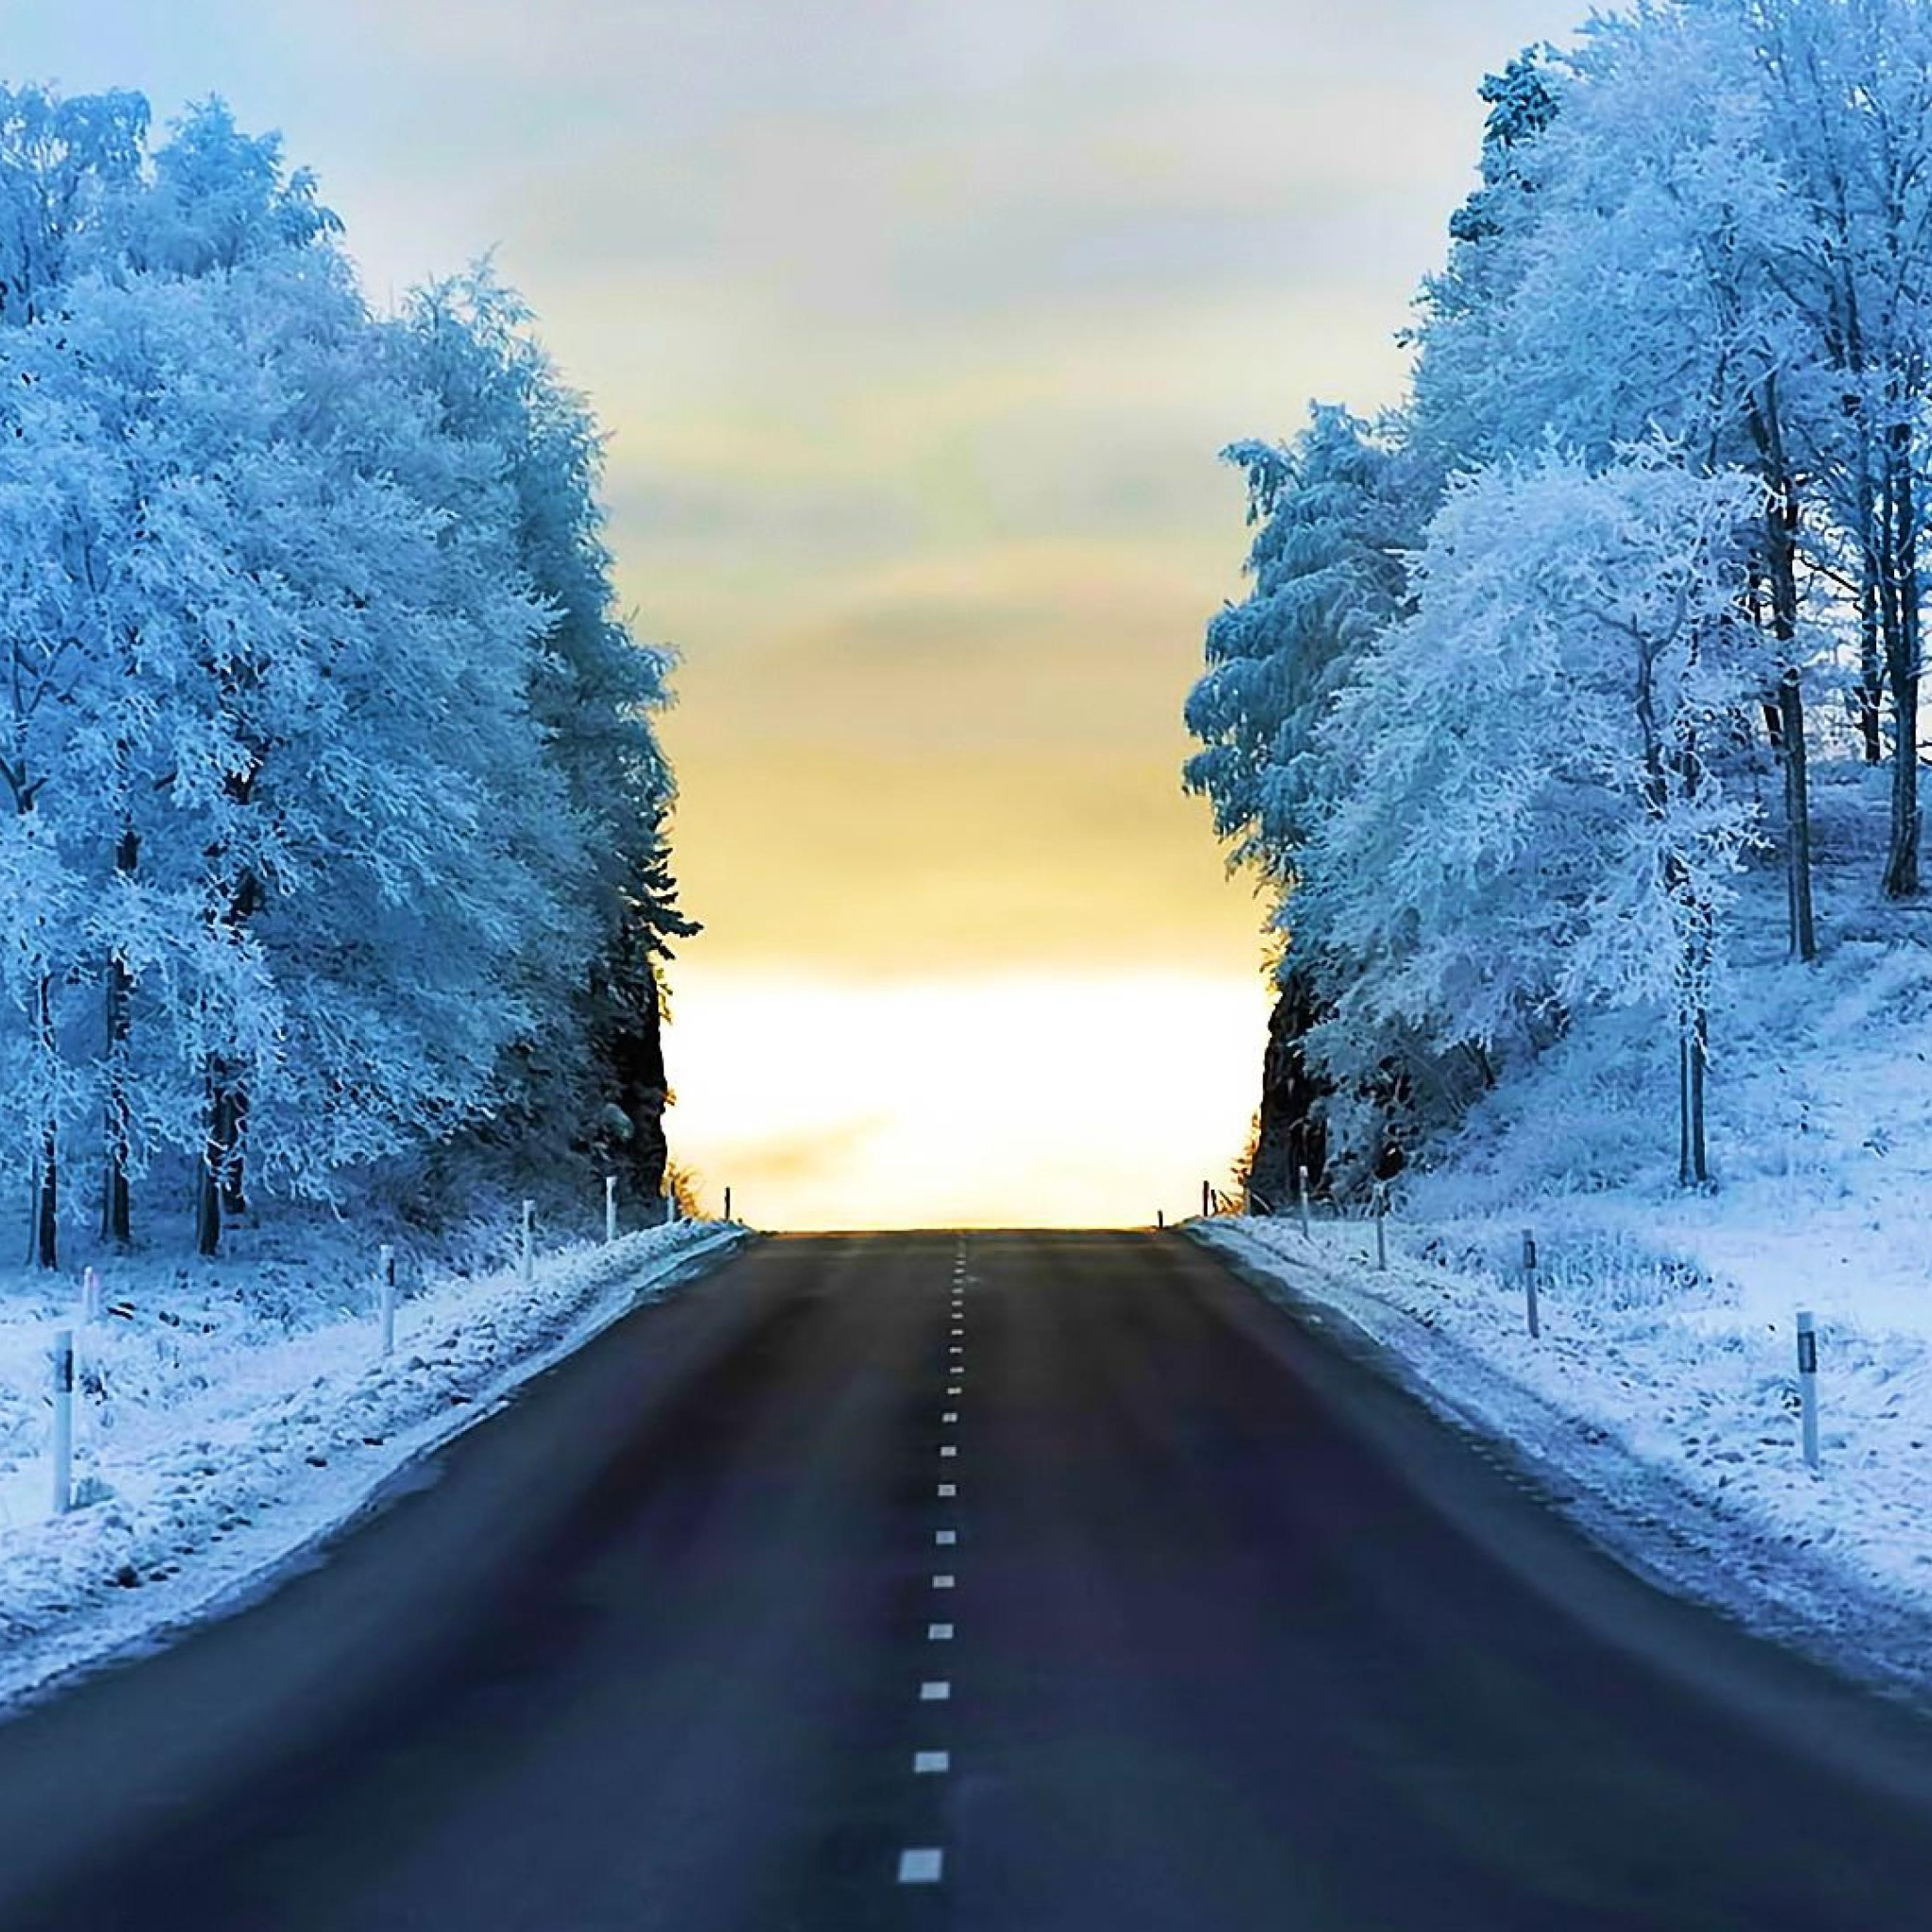 Тема зимней дороги. Зимняя дорога. Дорога зимой. Зима пейзаж. Заснеженная дорога.